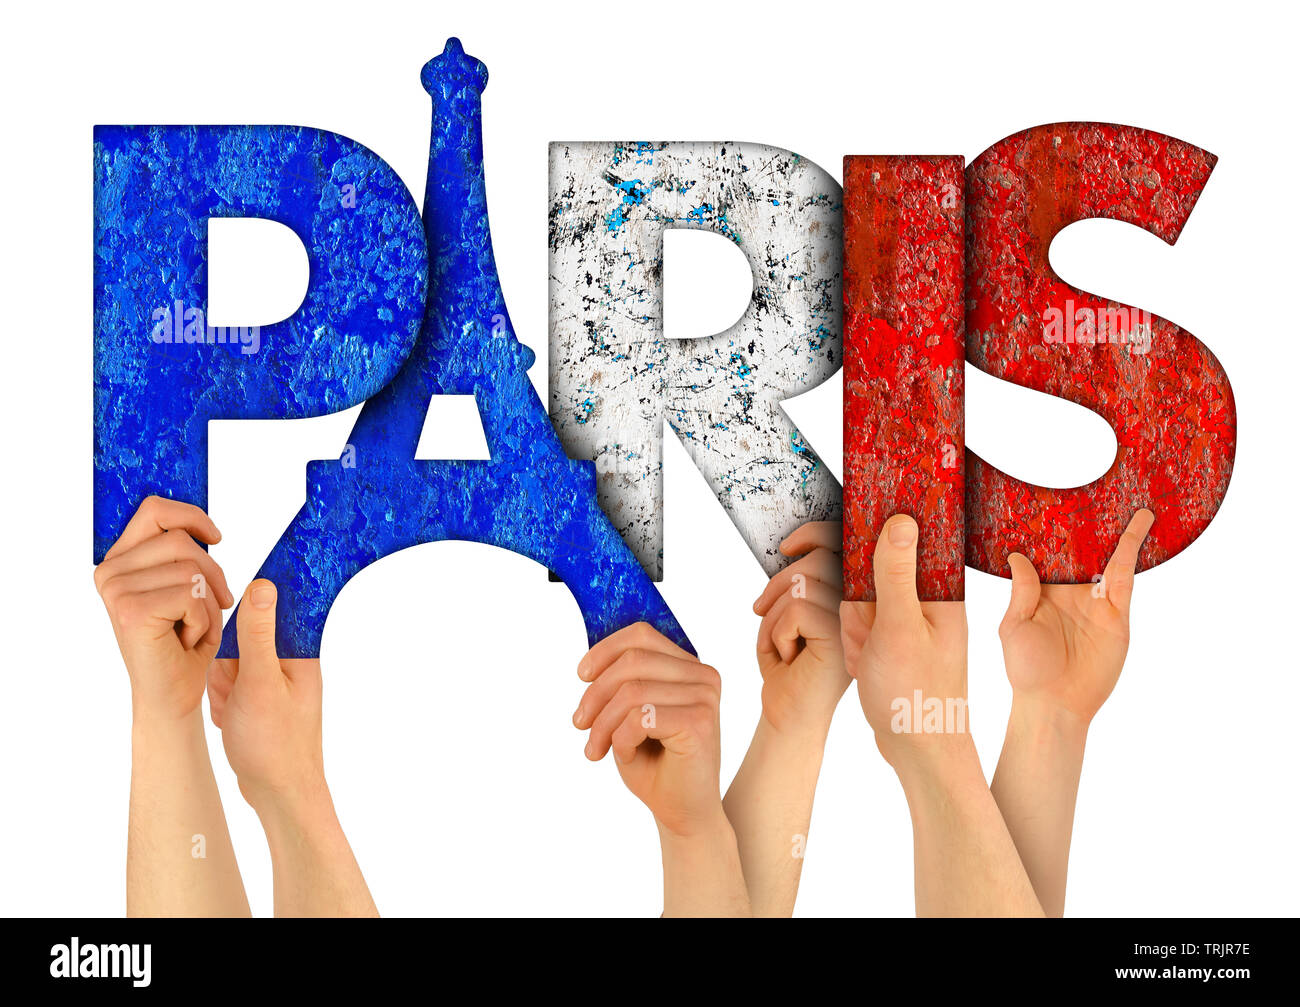 Menschen arme Hände halten bis Holz- brief Schriftzug bilden Wort Paris, Hauptstadt von Frankreich in französischer Sprache nationalflagge Farben Tourismus Reisen nation Co Stockfoto